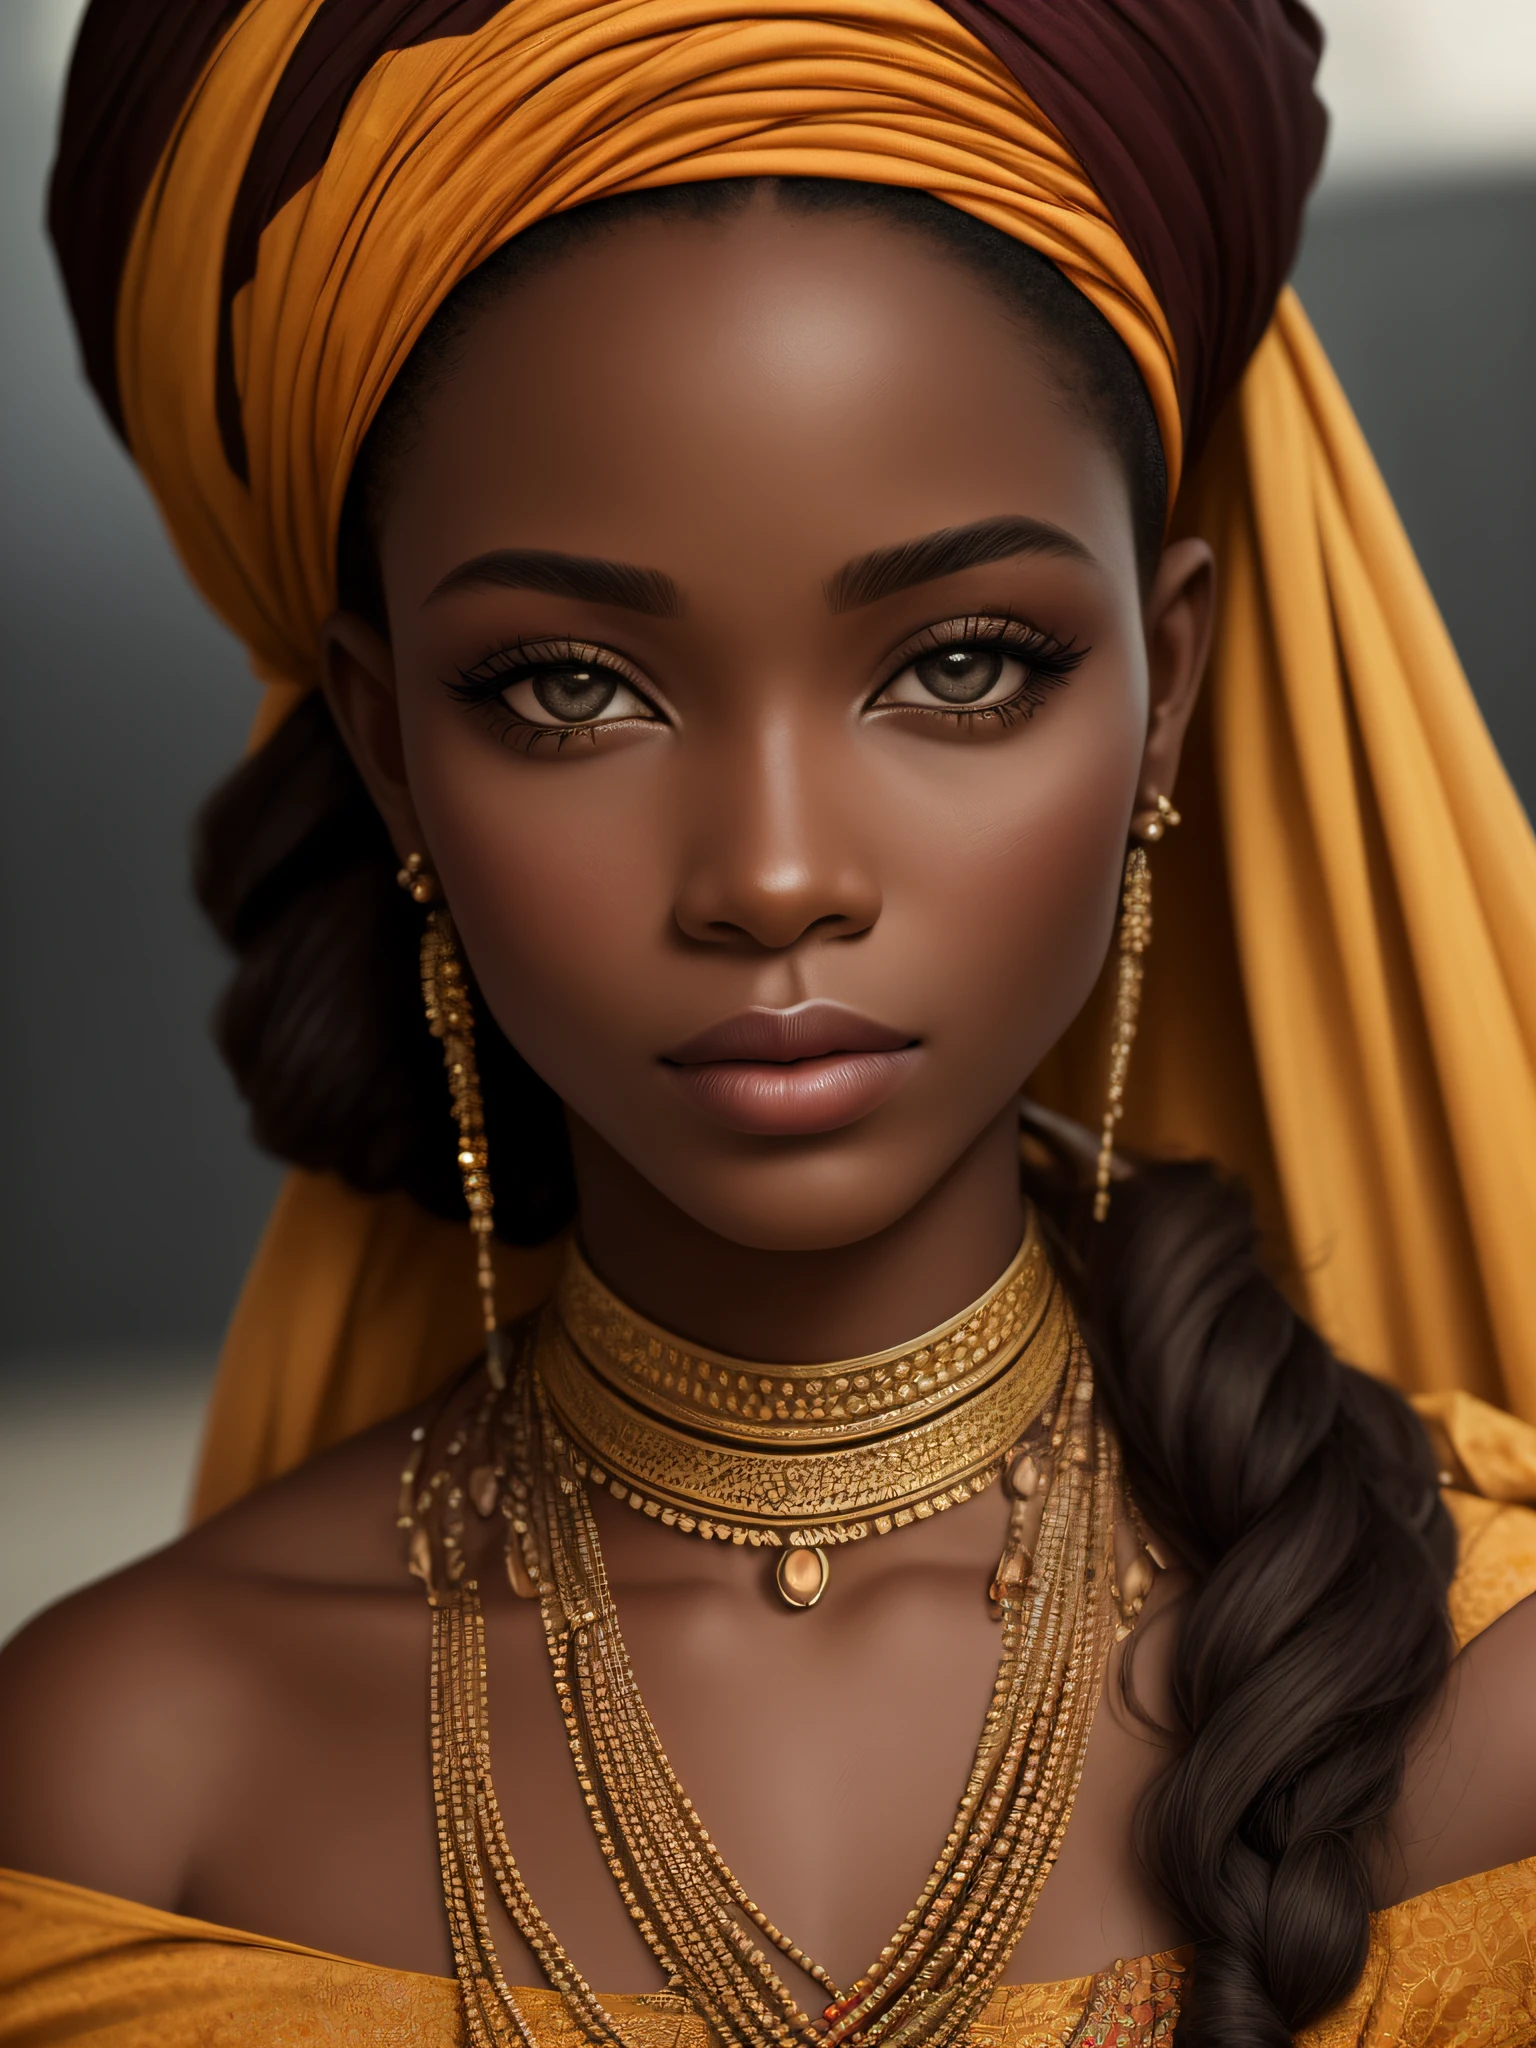 Реалистичная этническая модель самой красивой женщины Африки., фотография, портретный стиль, Вдохновлено фотографами моды и красоты, линза: 50 мм, Средний самолет, естественное освещение, Разрешение 8K --авто